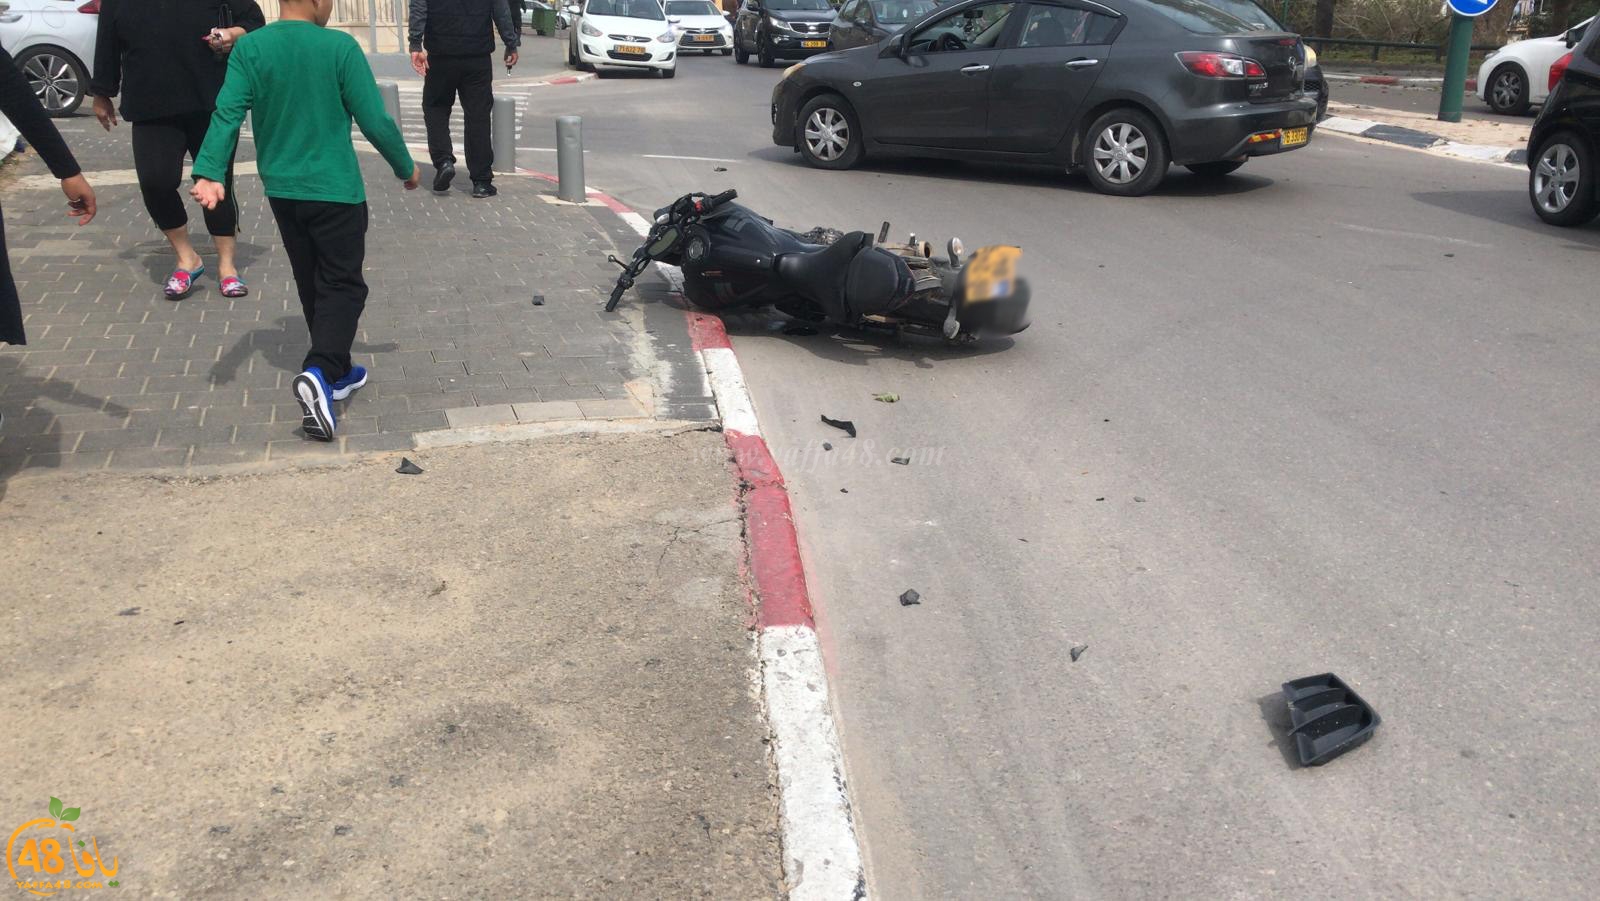  يافا: إصابة طفيفة لراكب دراجة نارية بحادث طرق 